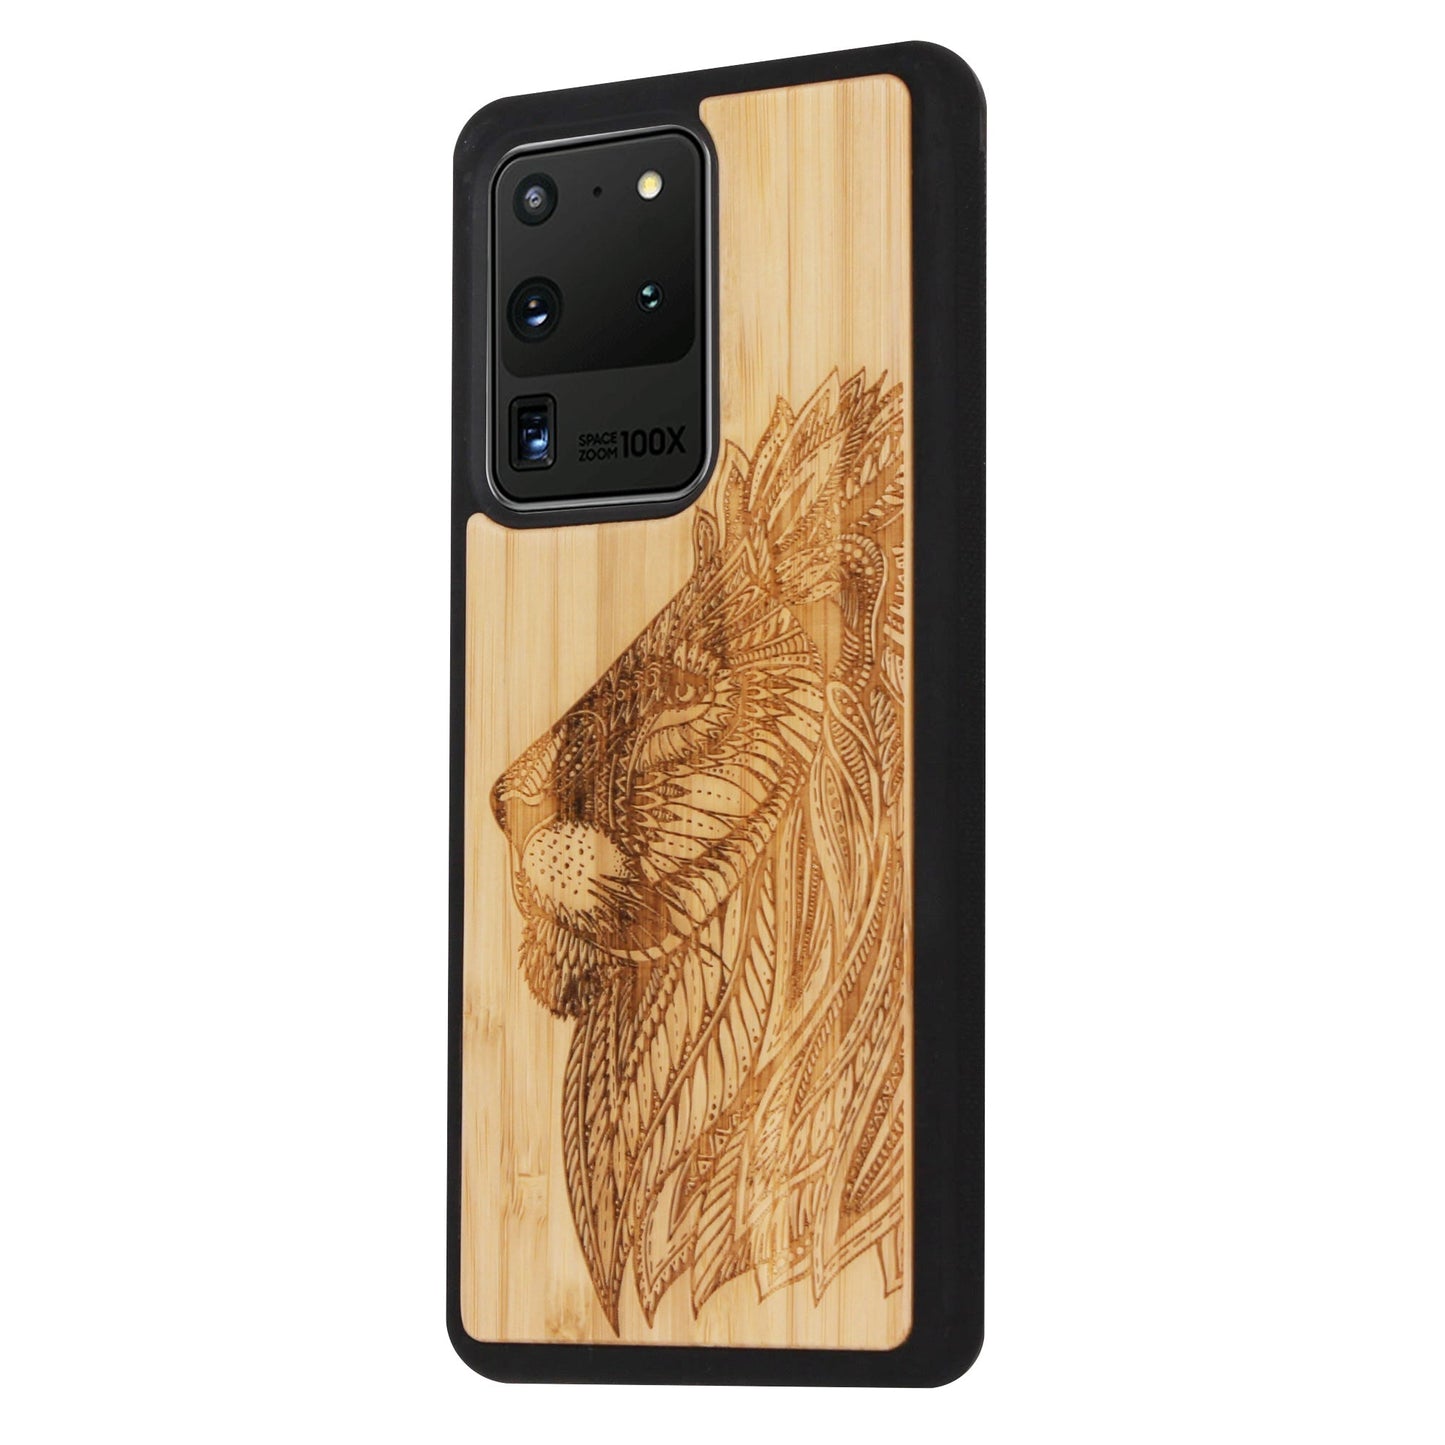 Bamboo lion Eden case for Samsung Galaxy S20 Ultra 